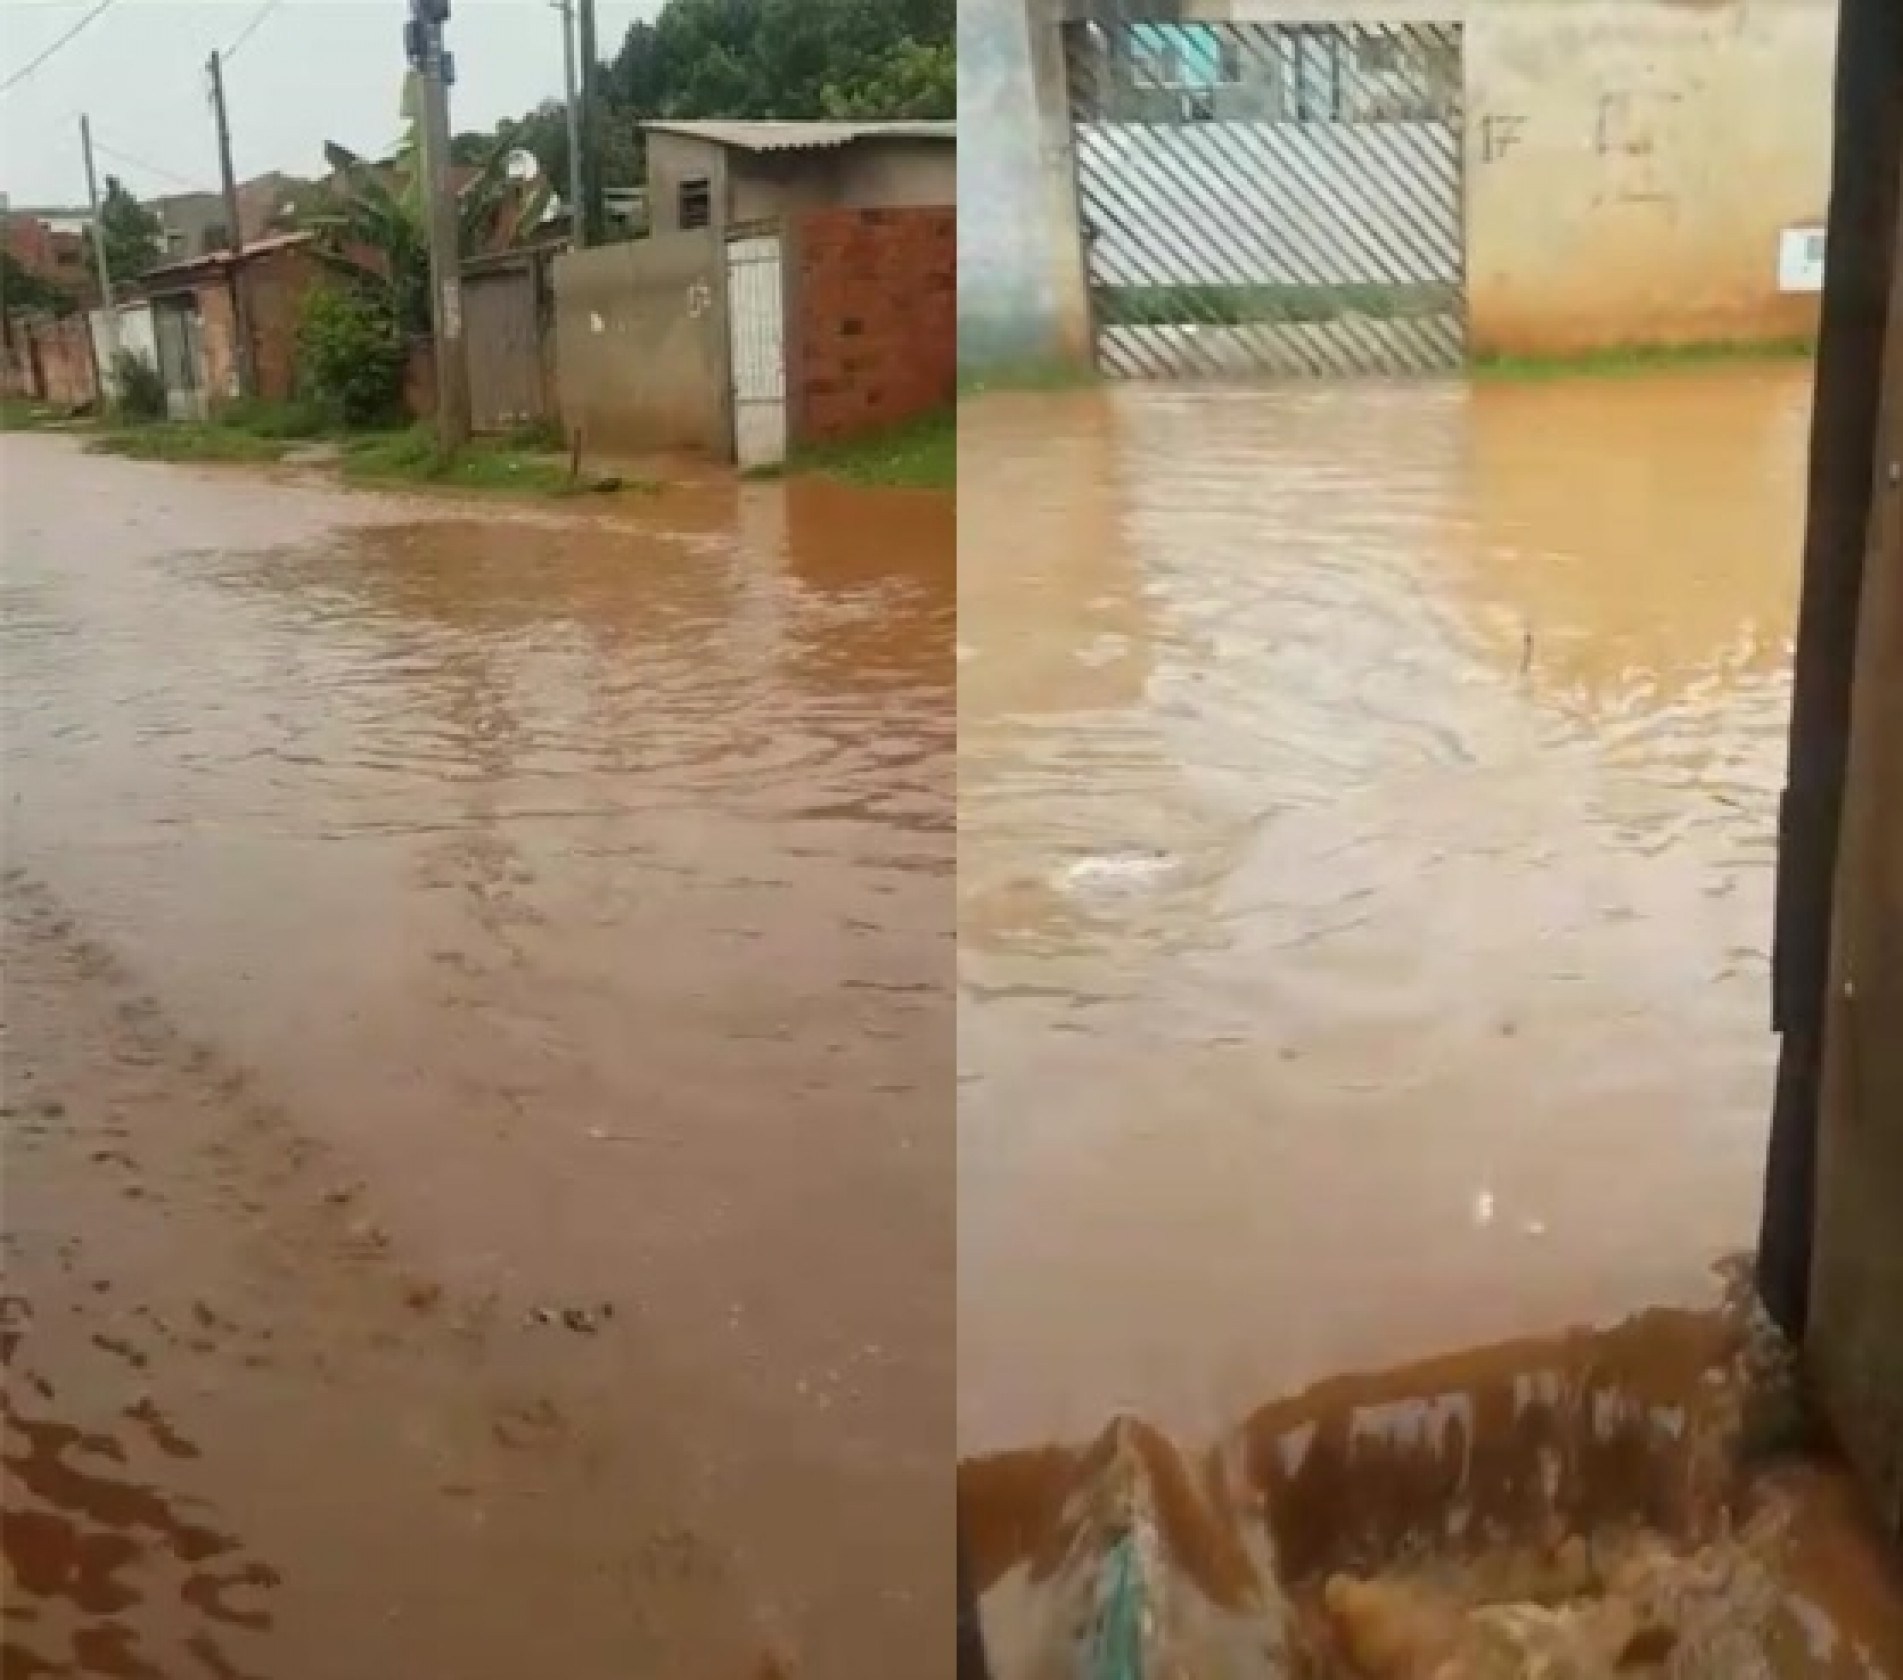 Moradores filmaram a rua alagada após as chuvas que atingiram a região na última segunda-feira (31)